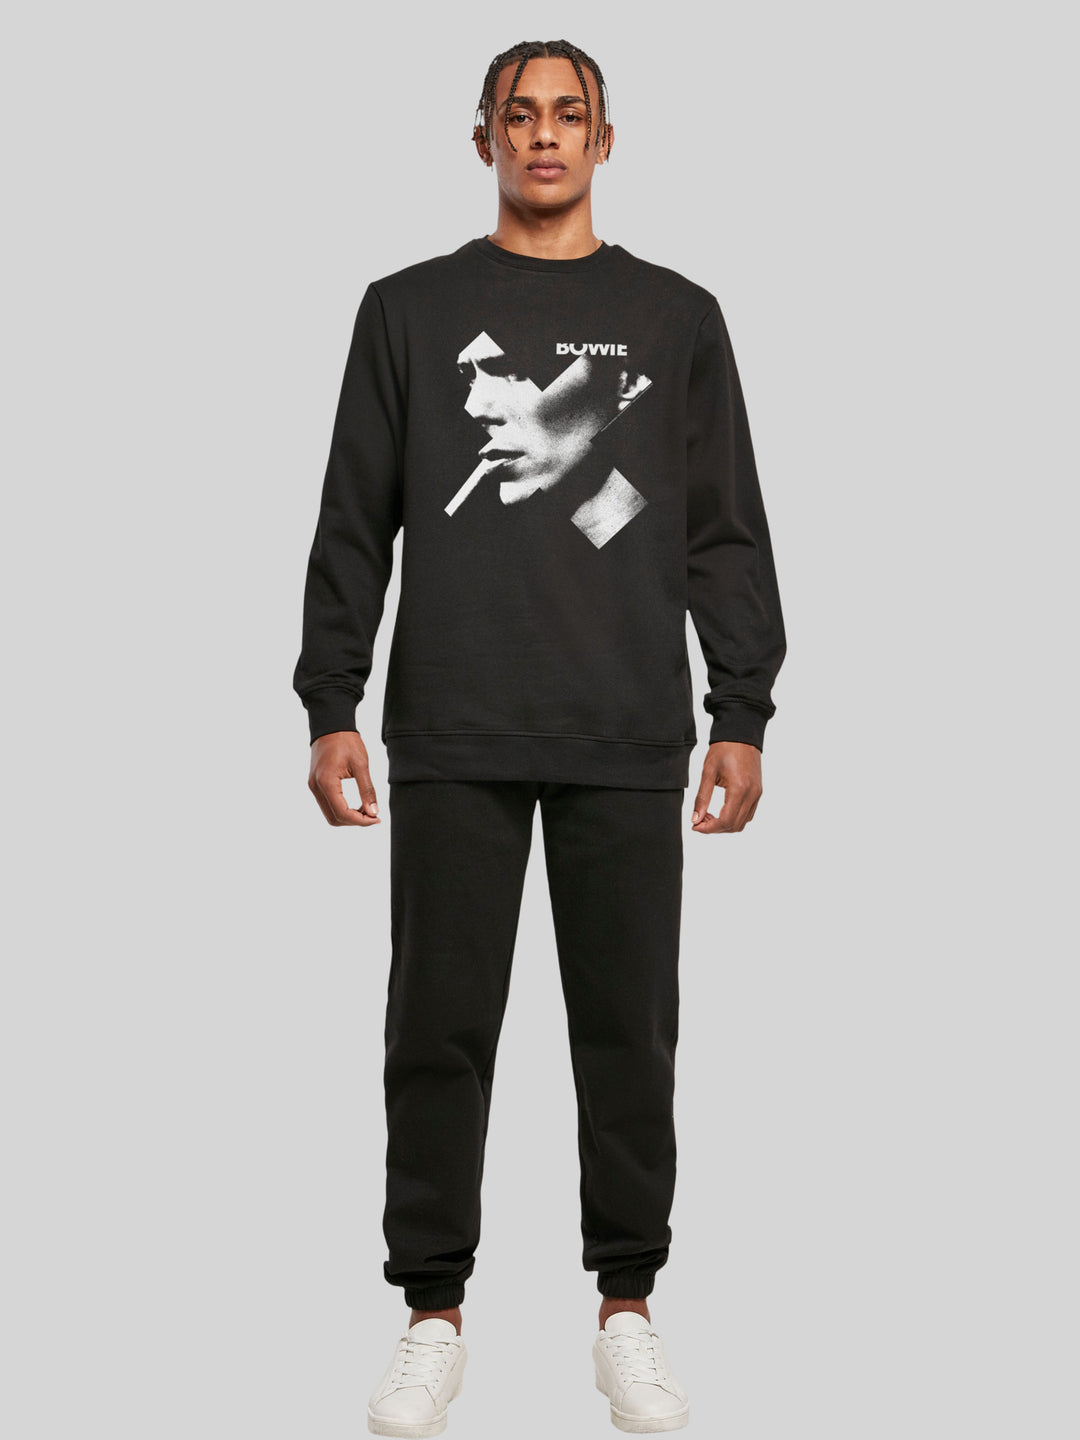 David Bowie Sweatshirt | Cross Smoke Herren | Longsleeve Sweater